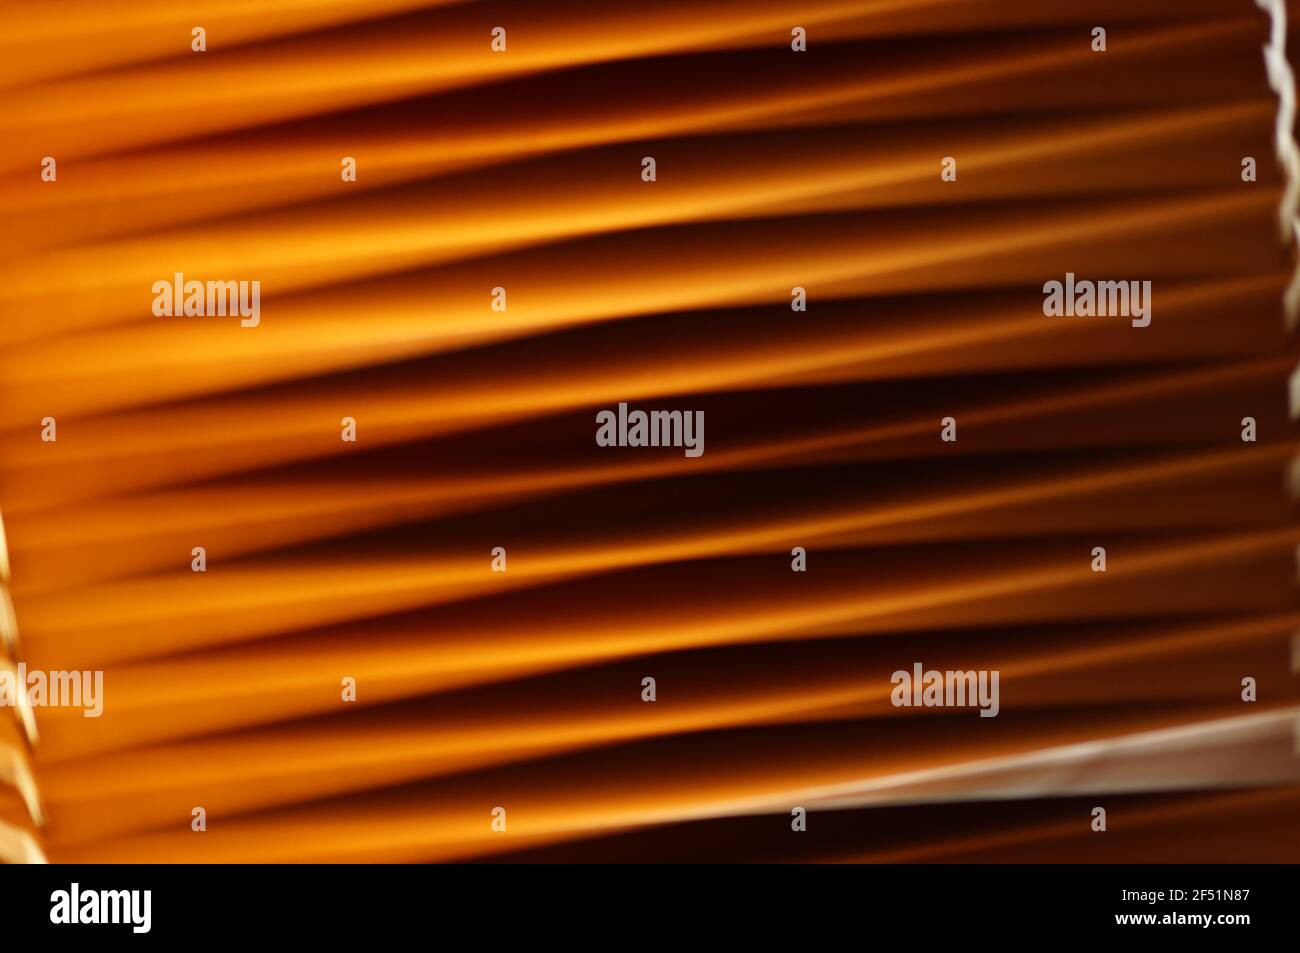 Holzjalousien im Fenster - schräge Aussicht. Fenstervorhänge aus Naturholz. Schräge orangefarbene Linien. Jalousien in Nahaufnahme. Stockfoto